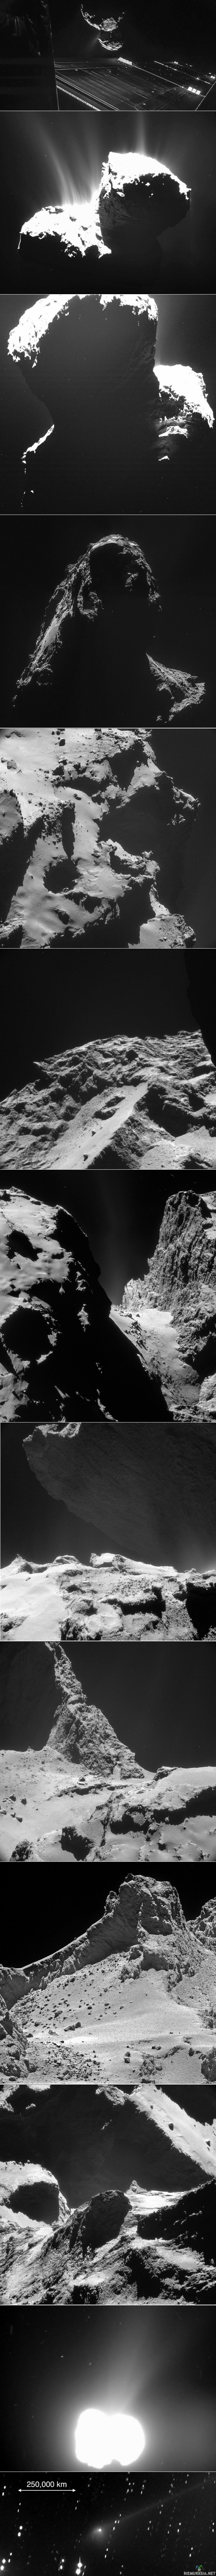 Tšurjumov–Gerasimenko - Ylin kuva on Rosetan ottama selfie ja taustalla näkyy Tšurjumov–Gerasimenko-komeetta. 67P/Tšurjumov–Gerasimenko on jaksollinen komeetta, jonka löysi neuvostoliittolainen Klim Ivanovitš Tšurjumov vuonna 1969. Sen kiertoaika Auringon ympäri on 6,45 vuotta. 

Rosetta: Euroopan avaruusjärjestön 2. maaliskuuta 2004 laukaisema 67P/Tšurjumov–Gerasimenkoa tutkimaan lähetetty Rosetta-luotain saavutti komeetan 6. elokuuta vuonna 2014 matkattuaan avaruudessa noin vuosikymmenen ja lennettyään matkallaan kolme kertaa Maan ja kerran Marsin ja asteroidien Šteins ja Lutetia ohi. Itse luotaimen kiertäessä komeetan jäistä ydintä, Philae-laskeutuja tutkii komeettaa sen pinnalta käsin. Kyseessä on tähän mennessä tarkin koskaan tehty tutkimus komeetasta. Luotain on nimetty egyptiläisen Rosettan kiven, jonka avulla ratkaistiin hieroglyfikirjoitus. 

Laskeutuminen komeetalle: laskeuduttuaan Philae pomppasi komeetan pinnalla ensin noin yhden kilometrin matkan yhden tunnin ja 50 minuutin aikana, sitten se pompahti vielä noin seitsemän minuutin ajaksi ylös komeetan pinnasta kunnes laskeutui lopullisesti. Tämä pomppiminen johtui siitä, että laskeutujan komeetan pintaan kiinnittävät harppuunat eivät toimineet. Philaen ensimmäinen kosketus komeetan kamaraan tapahtui suunnitellulla laskeutumisalueella, mutta se päätyi varjoisammalle alueelle. Tästä huolimatta laskeutuja sai suoritettua suurimman osan mittauksistaan, ja vielä lähettämään kaikki mittaustuloksensa Maahan ennen kuin sen energia loppui. Se kuitenkin voidaan ehkä käynnistää vielä uudelleen komeetan saapuessa lähemmäksi Aurinkoa. 
